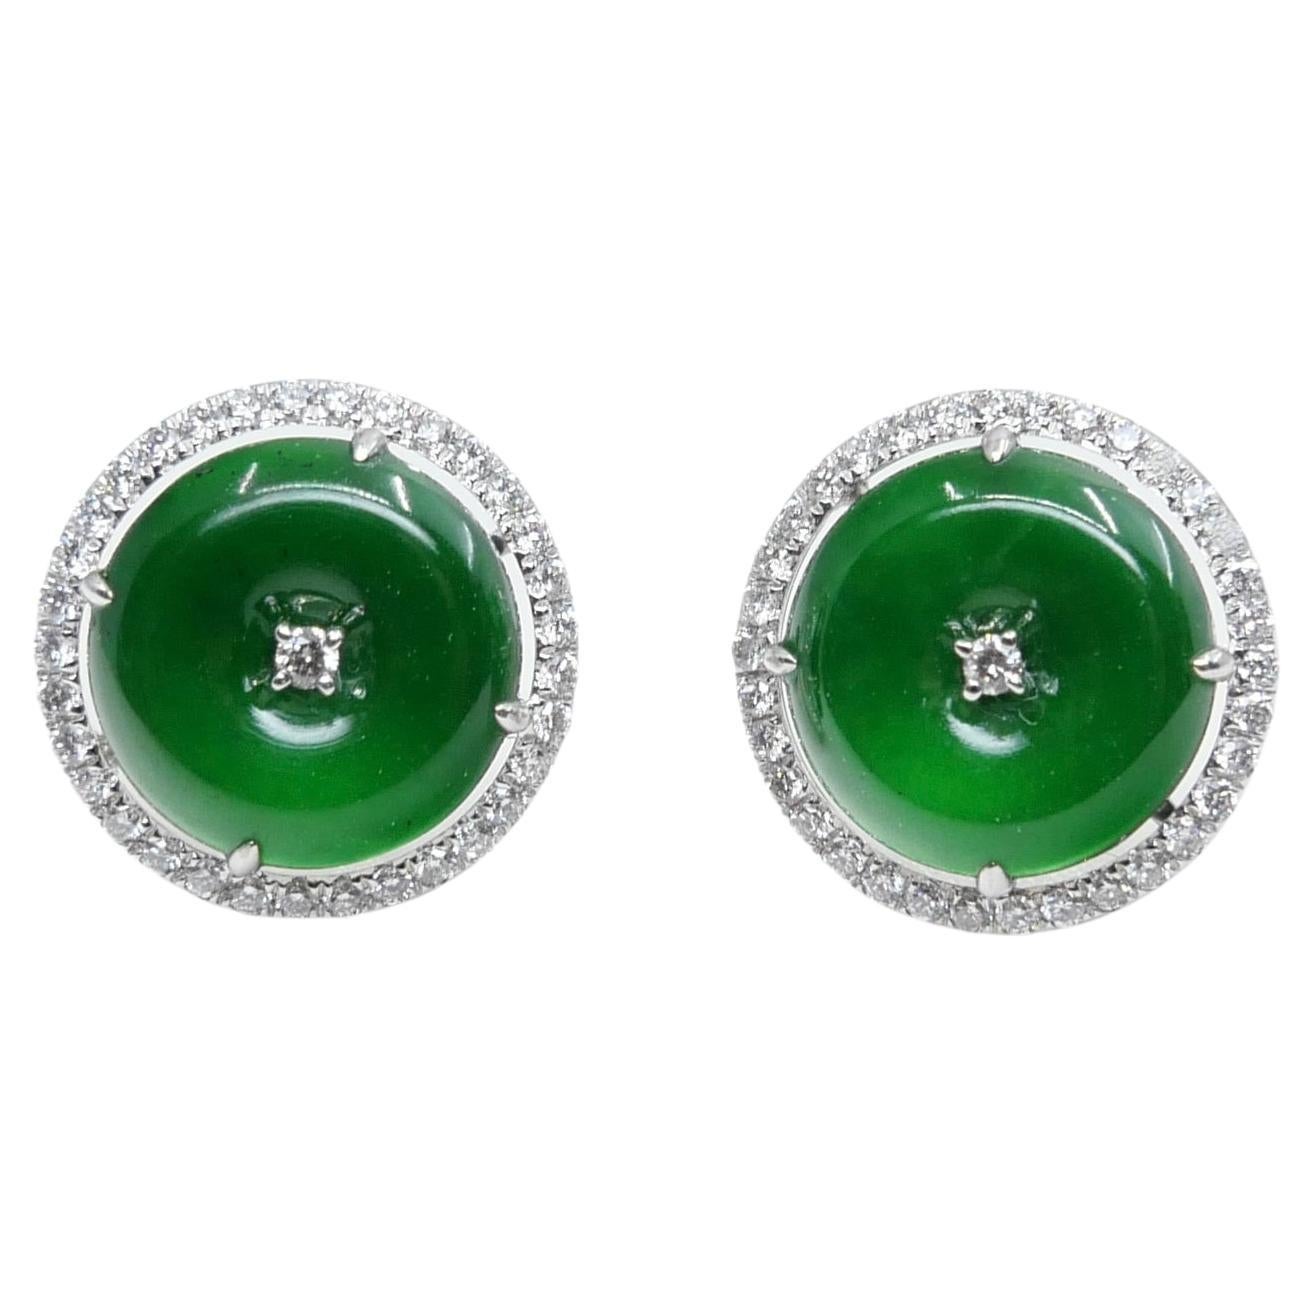 Boucles d'oreilles en jade et diamant certifiées naturelles de type A. Couleur vert pomme